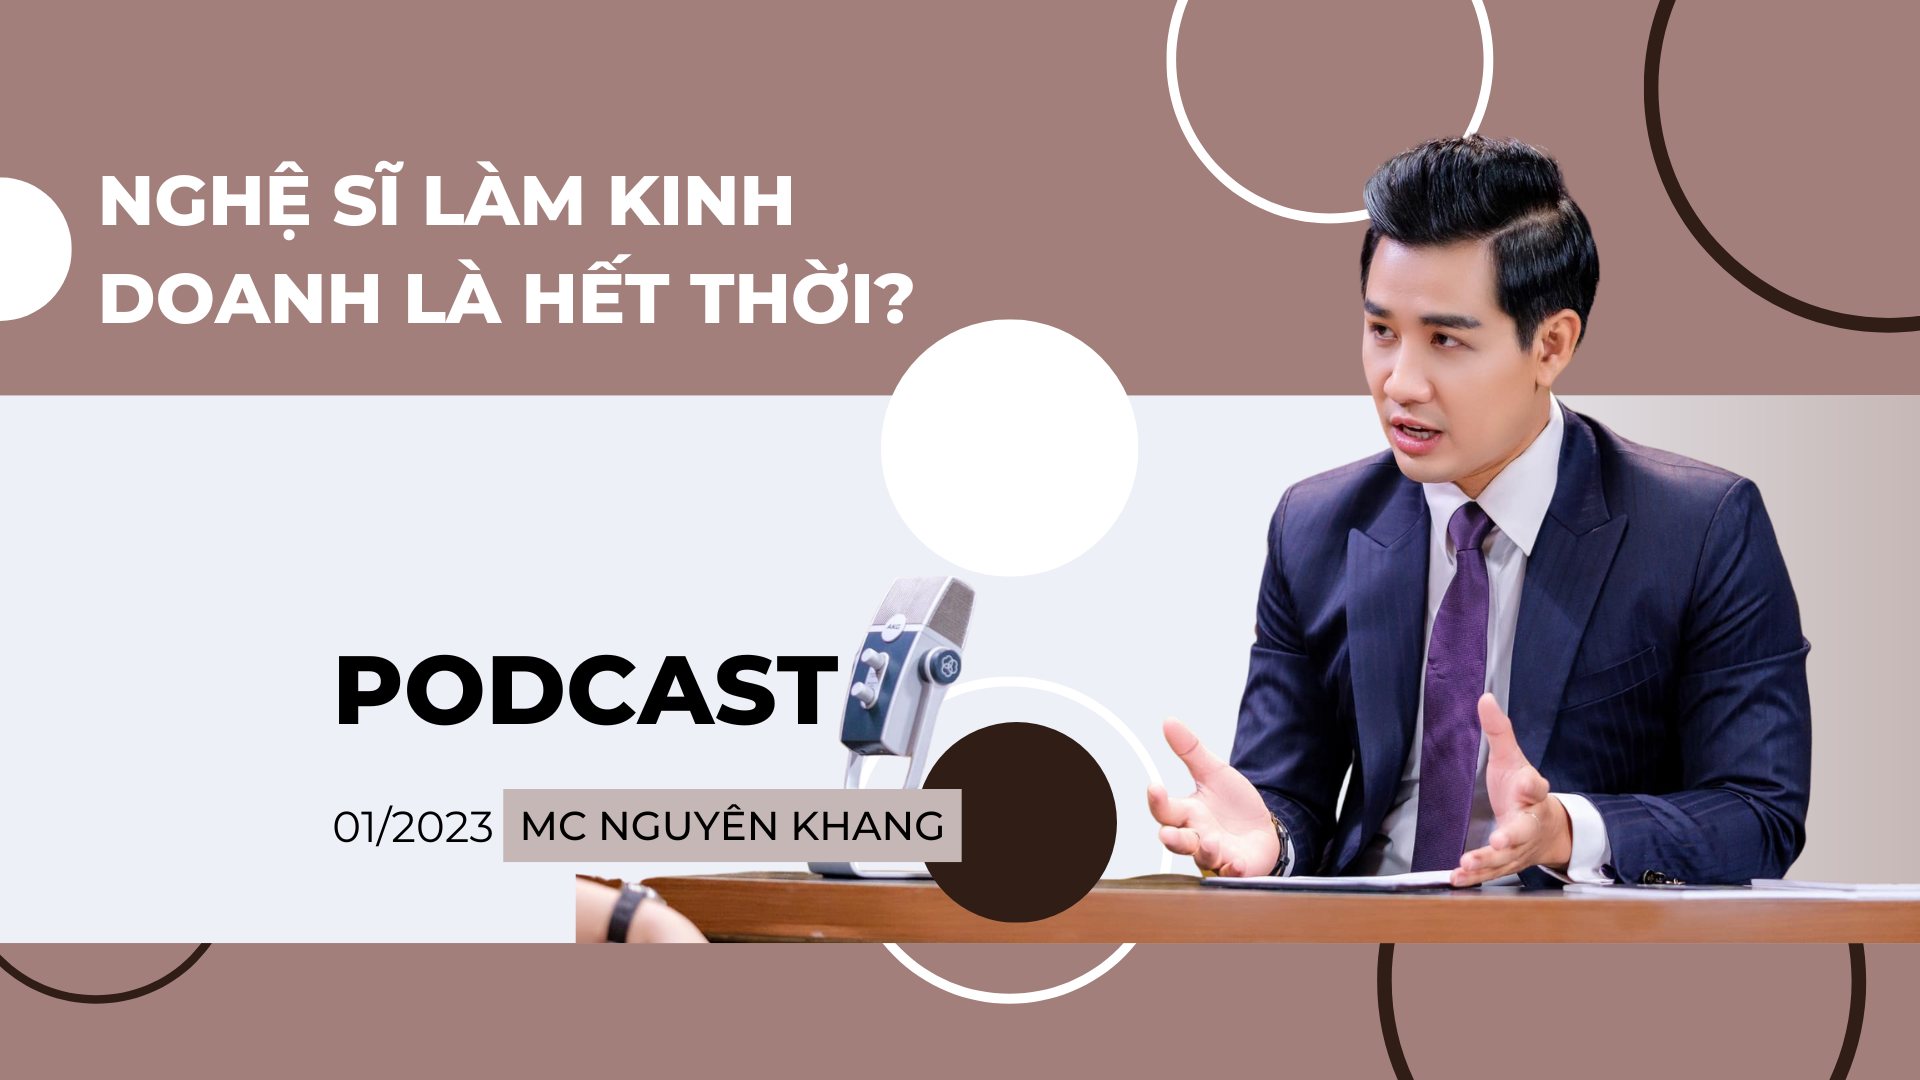 [Podcast] MC Nguyên Khang: Nghệ sĩ chuyển sang kinh doanh có phải vì hết thời? - 1